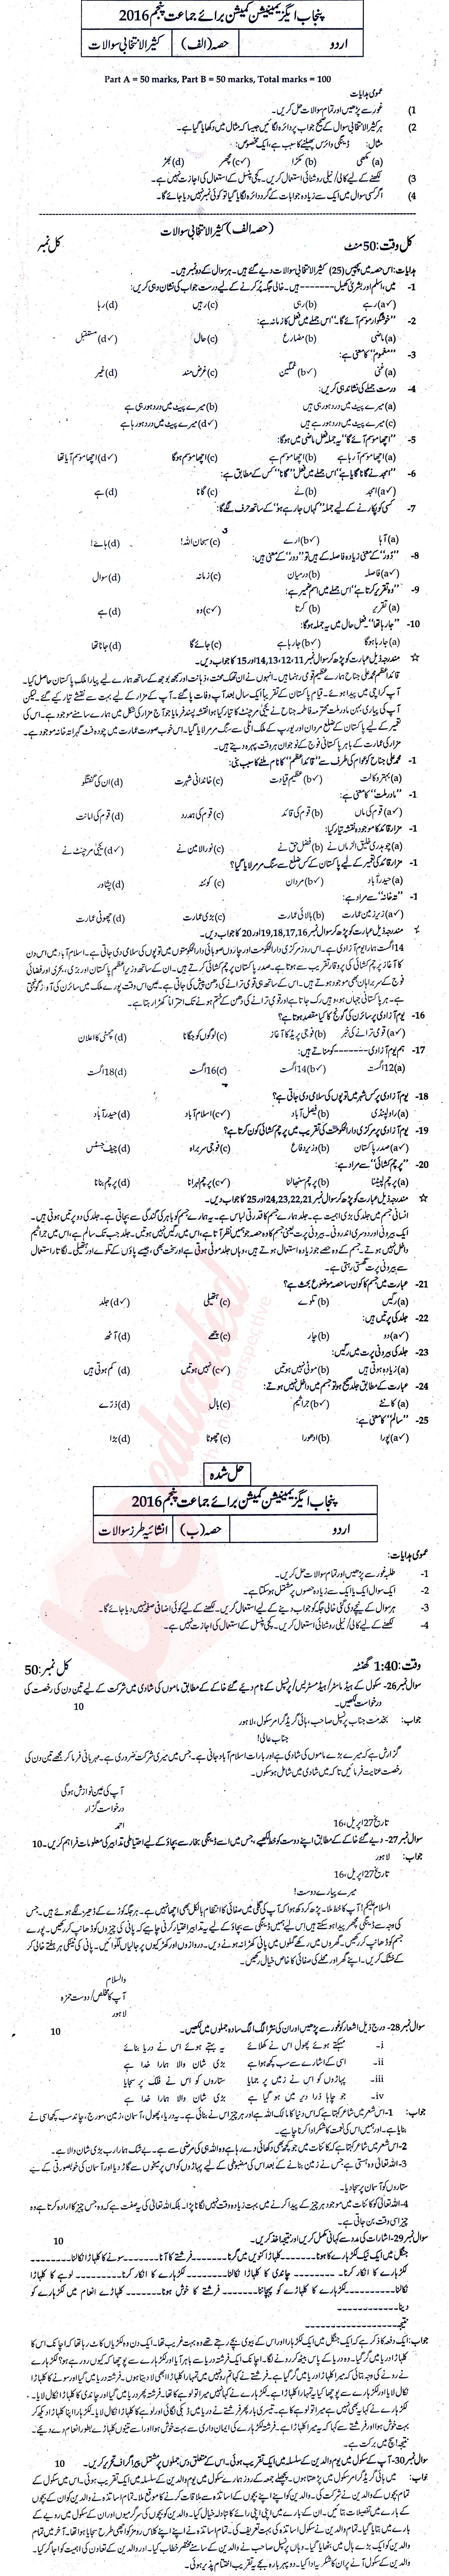 Urdu 5th class Past Paper Group 1 PEC 2016